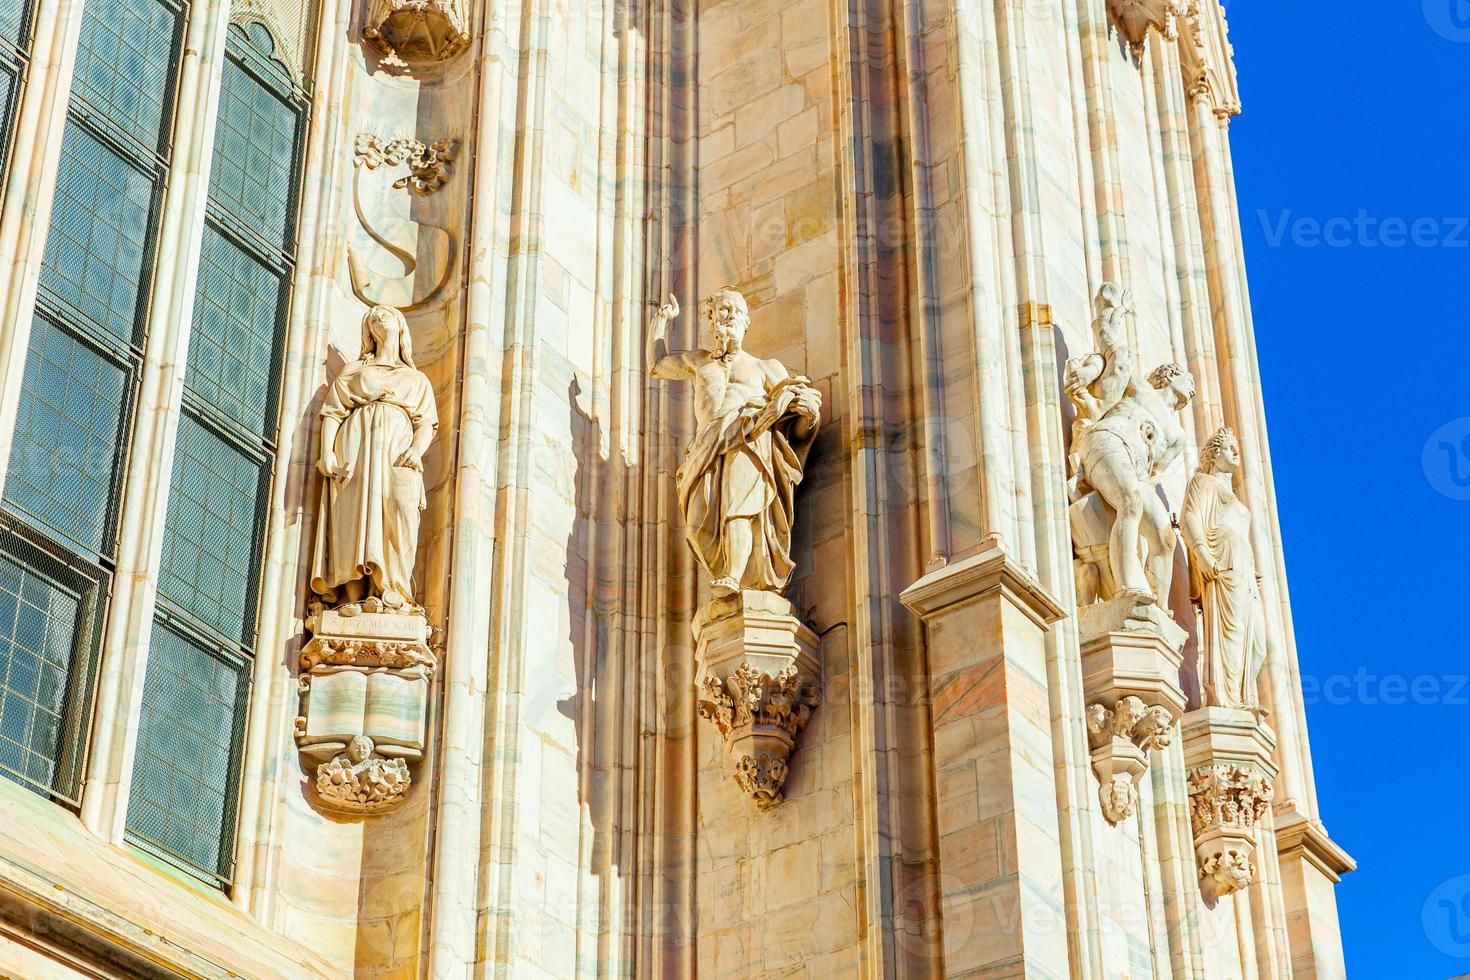 Fassade des Mailänder Doms Duomo di Milano mit gotischen Türmen und weißen Marmorstatuen. Top-Touristenattraktion auf der Piazza in Mailand, Lombardei, Italien. Weitwinkelansicht der alten gotischen Architektur und Kunst. foto